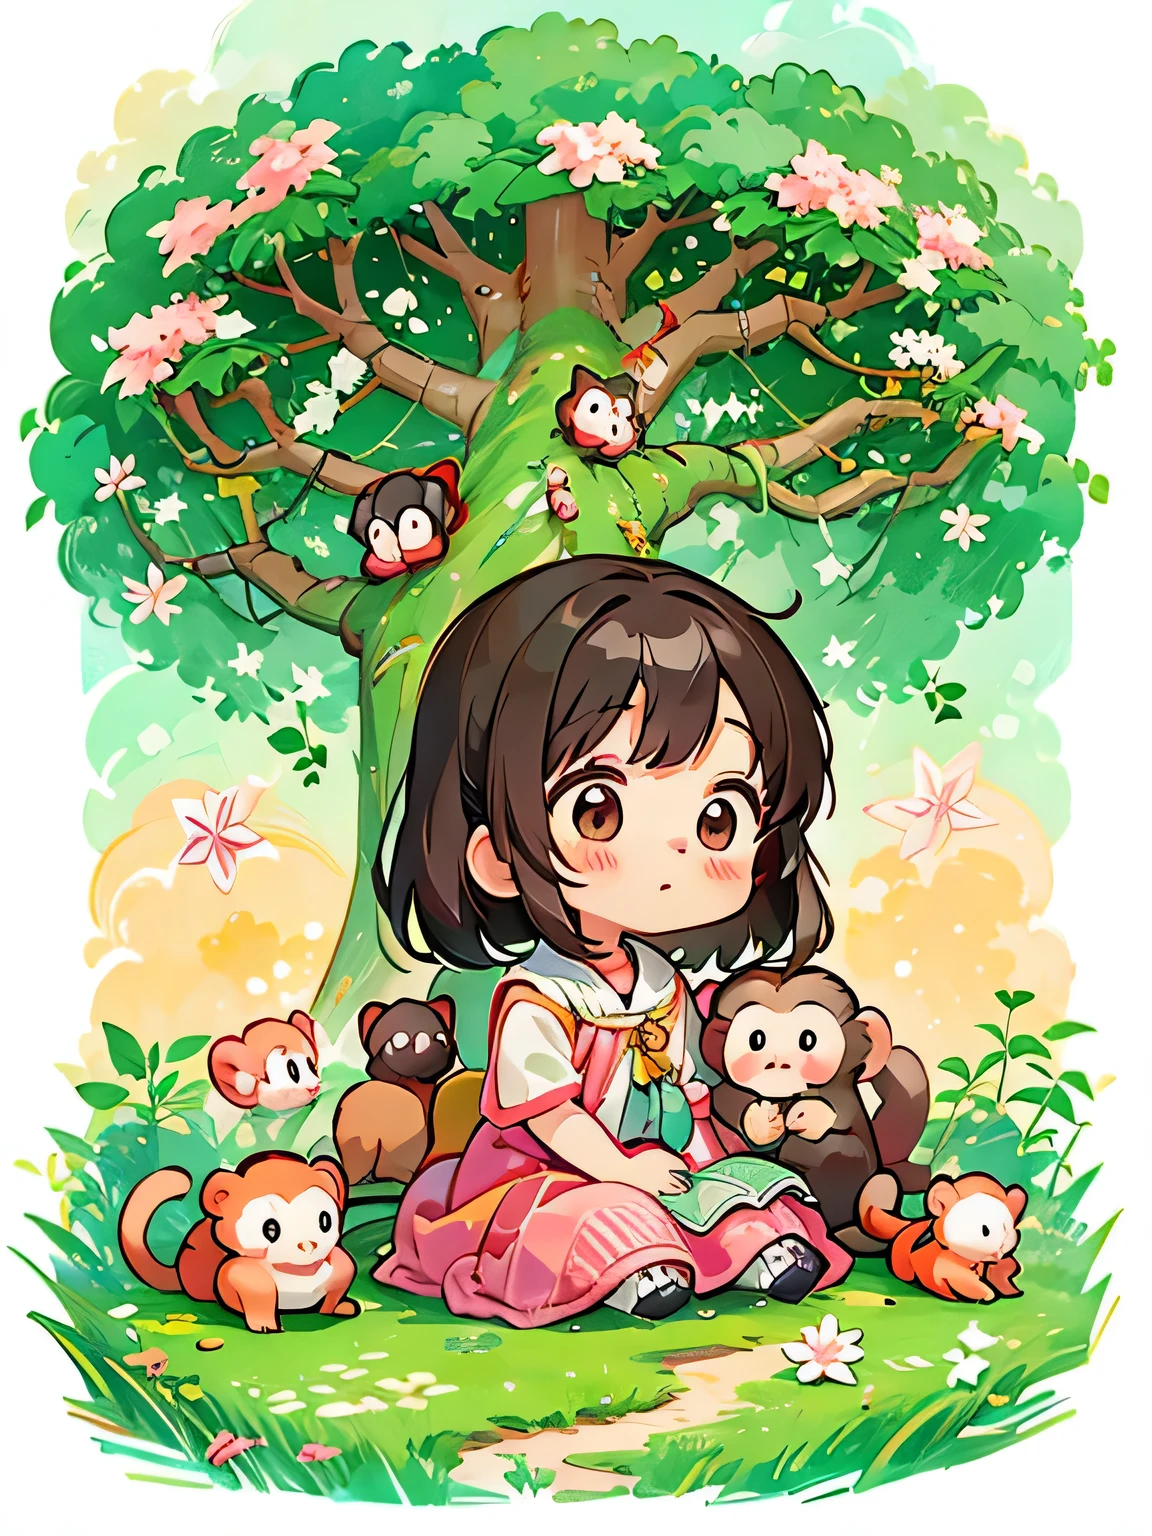 Estilo Momoko Sakura, Diseño Kawaii, La chica más bella de todos los tiempos.、Chibi、lindo mono, bosque de monos